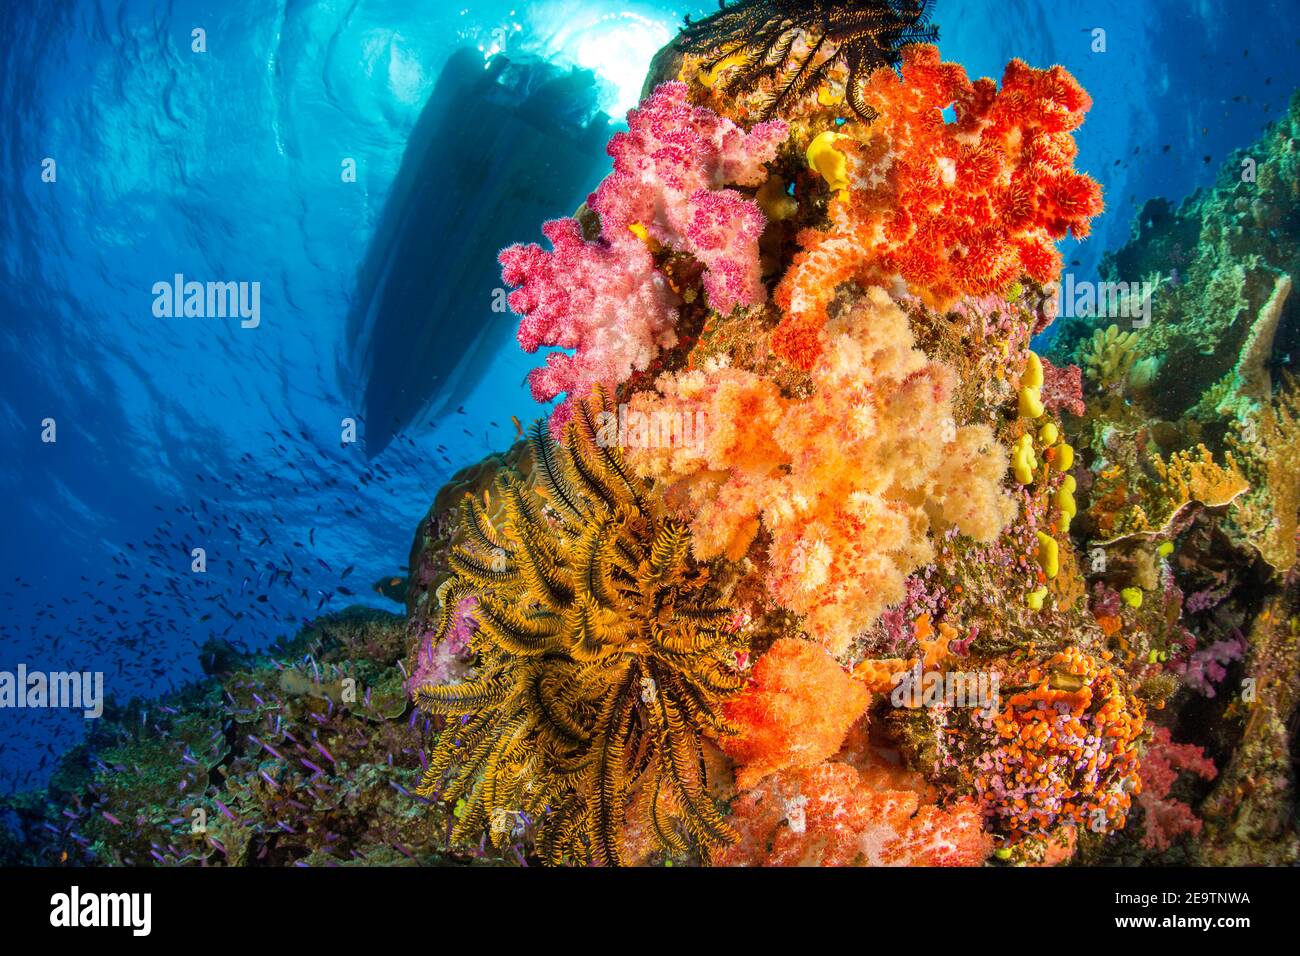 Le stelle di corallo e piuma dell'Alconia dominano questa scena della barriera corallina delle Fiji con le anthias che scolano più in basso la barriera corallina. Sulla superficie una barca da immersione attende per p Foto Stock